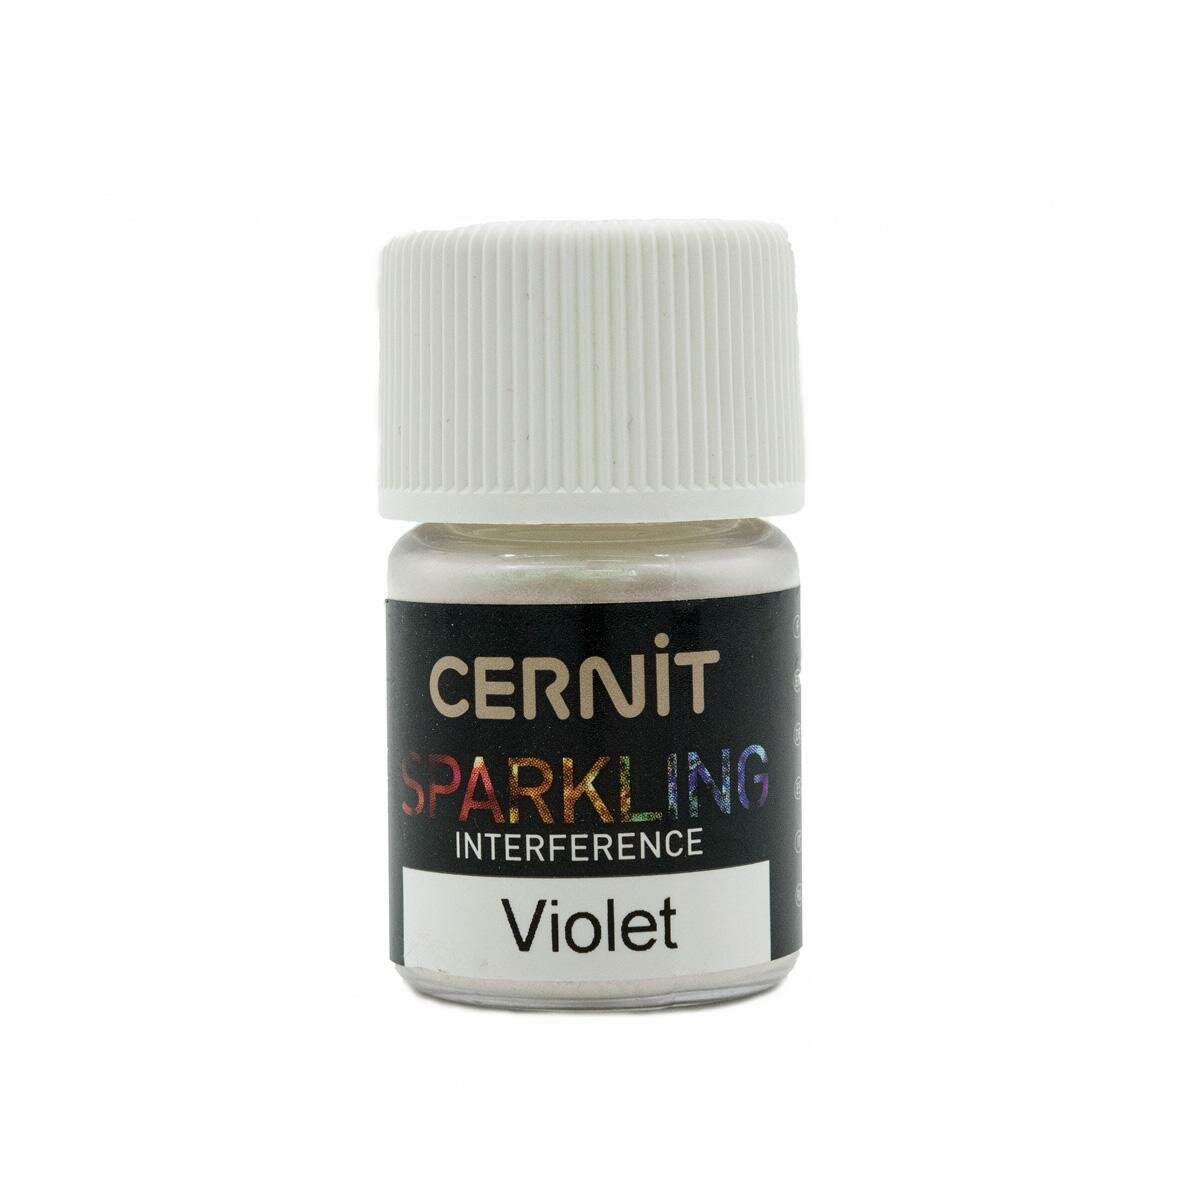 Мика-порошок Cernit "Sparkling Powder", слюда, проявляющийся, цвет 900, фиолетовый, CE6110005, 5 г